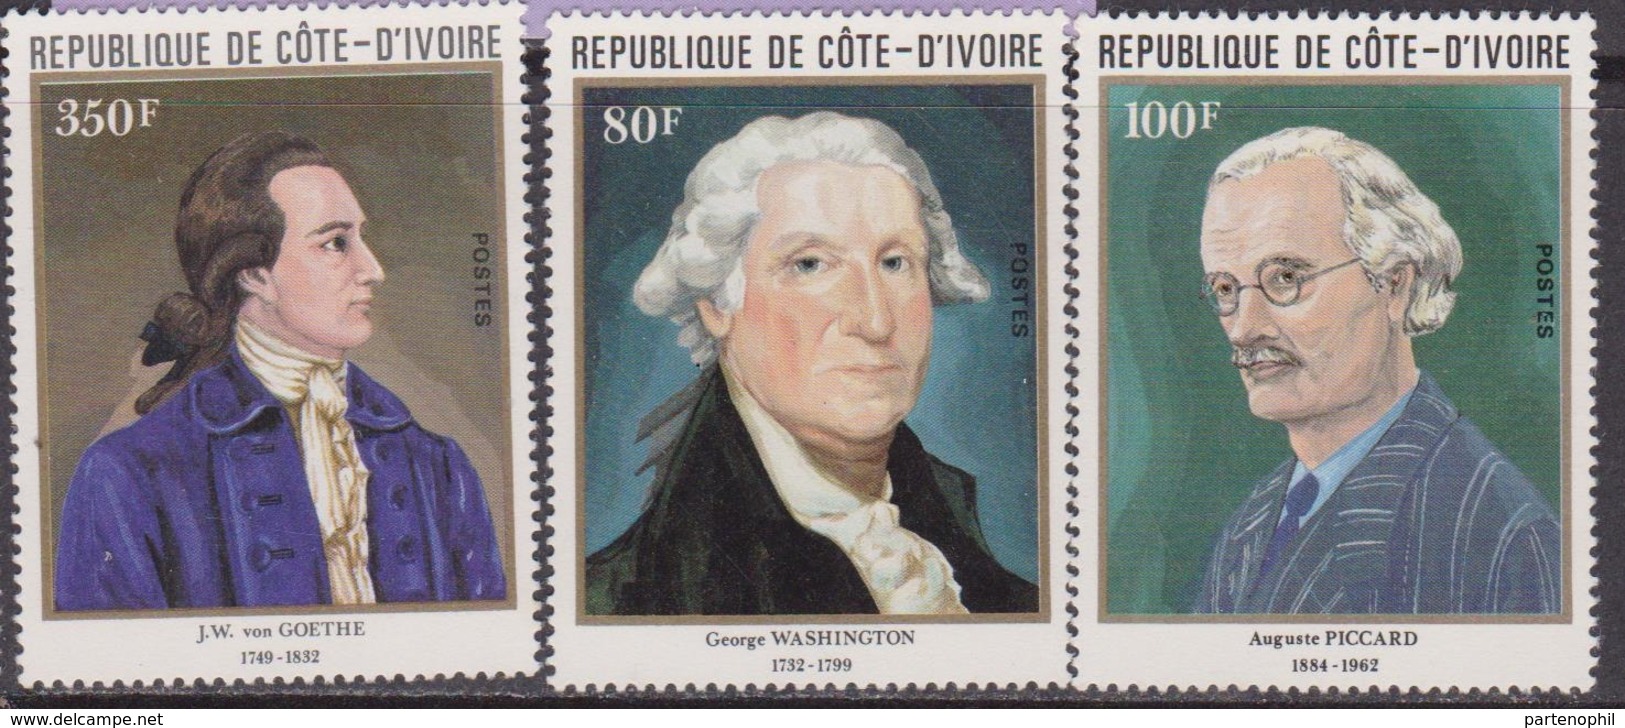 Costa D'Avorio / Ivory Coast / Code D'ivoire - Painting Art Washington Roosevelt Goethe Set MNH - George Washington